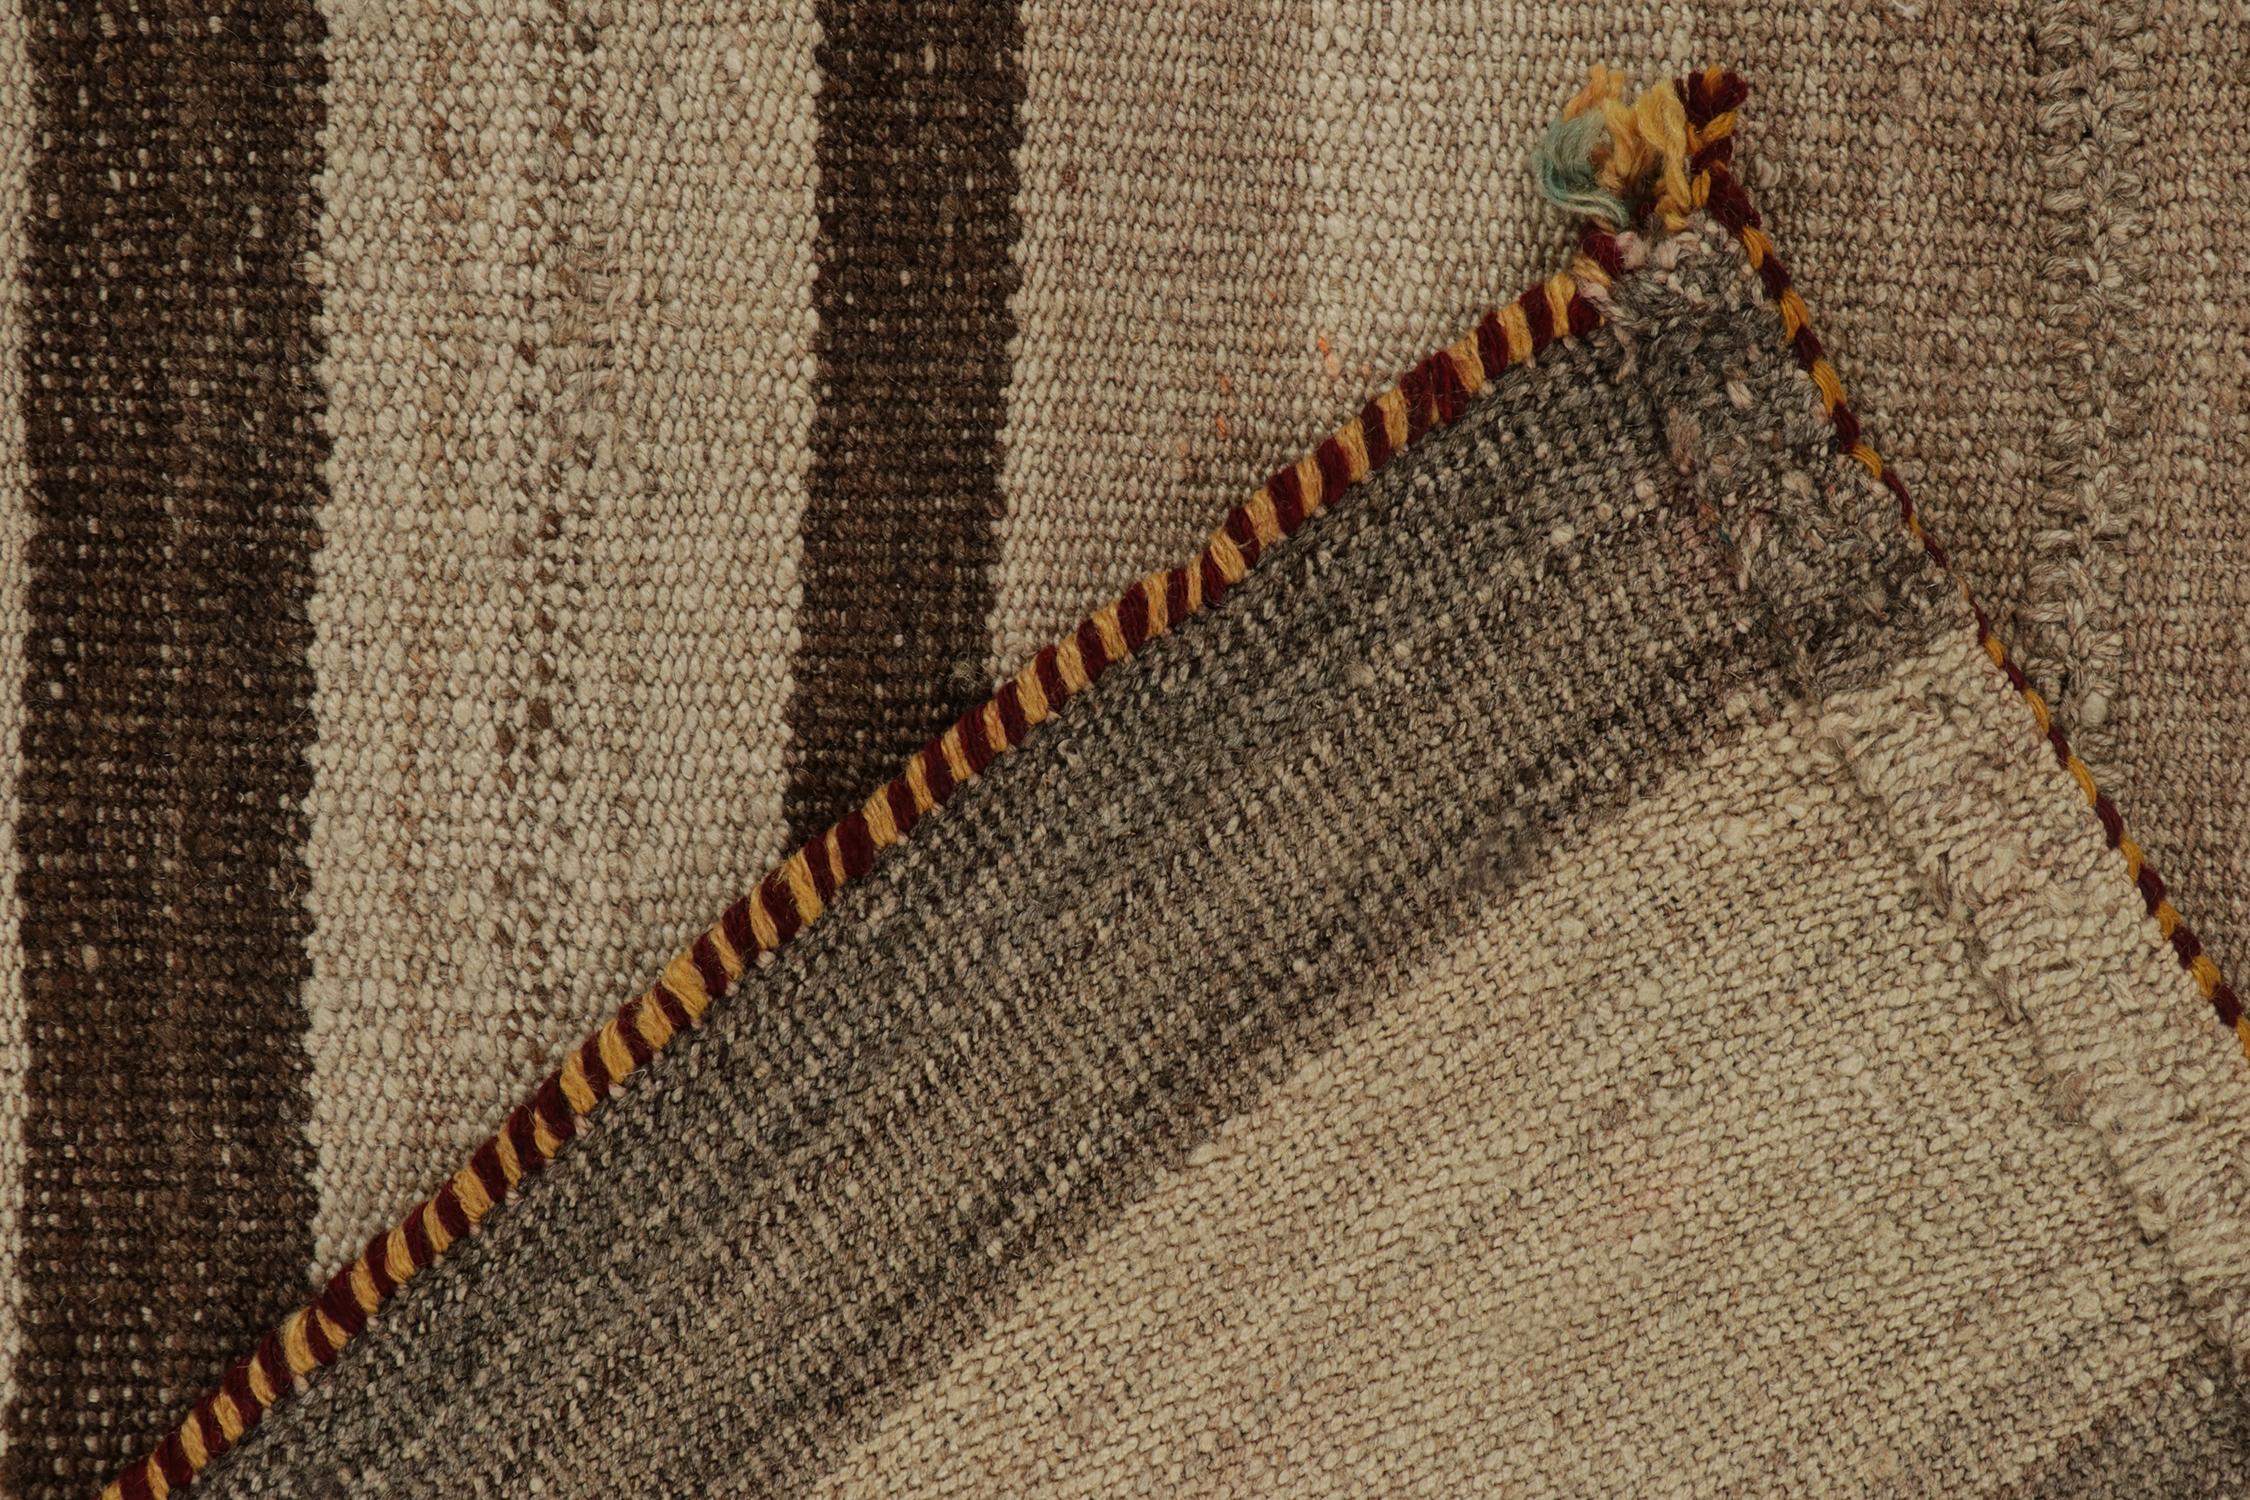 Wool Vintage Persian Kilim Rug in Beige-Brown Stripes and Motifs by Rug & Kilim For Sale